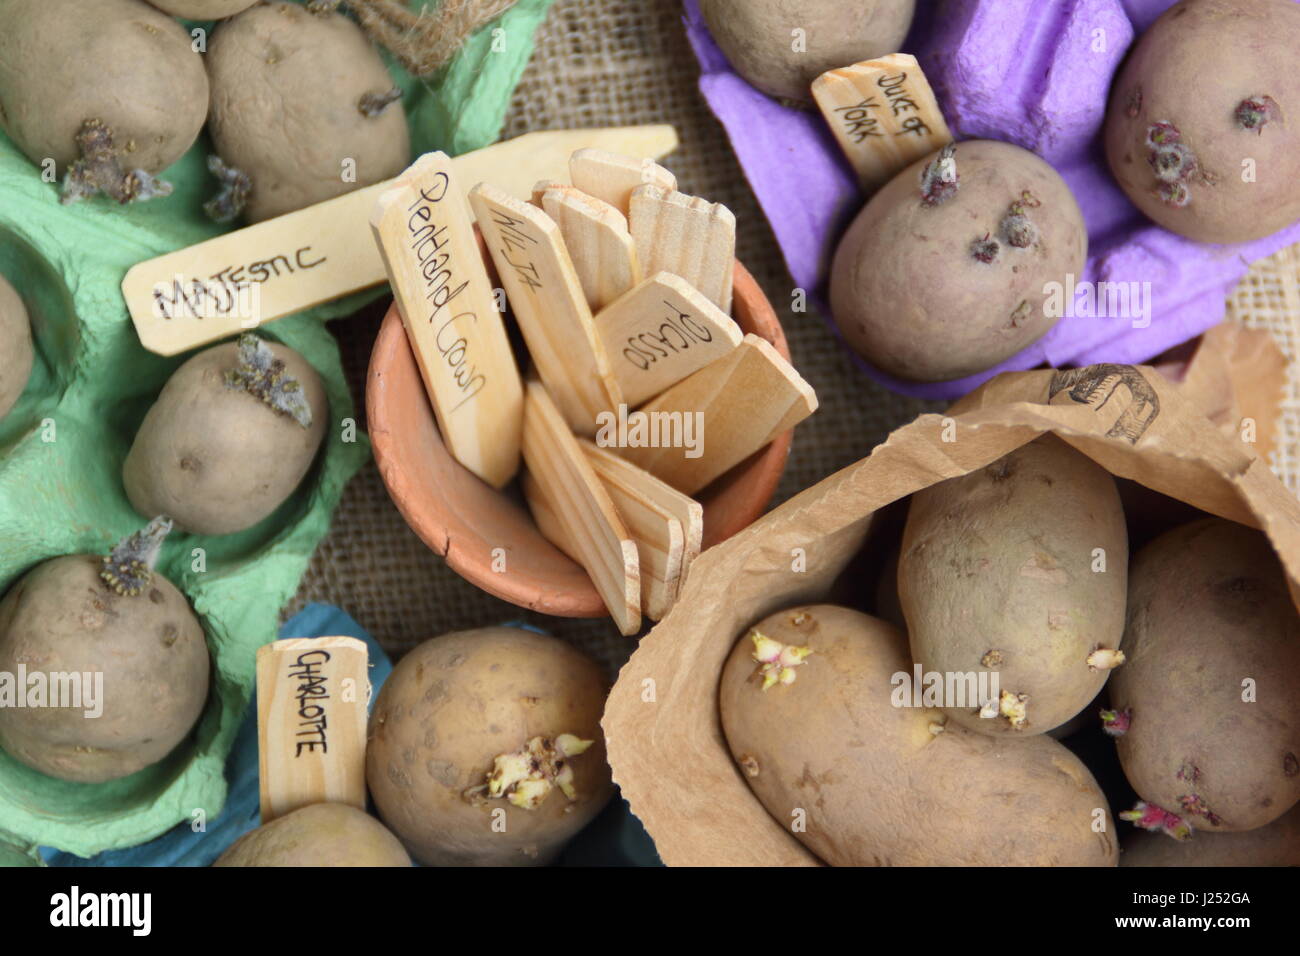 Les plants de pommes de terre appelée chitting à egg fort à l'intérieur des conteneurs, afin d'encourager une forte avant de les planter en germes dans potager Banque D'Images